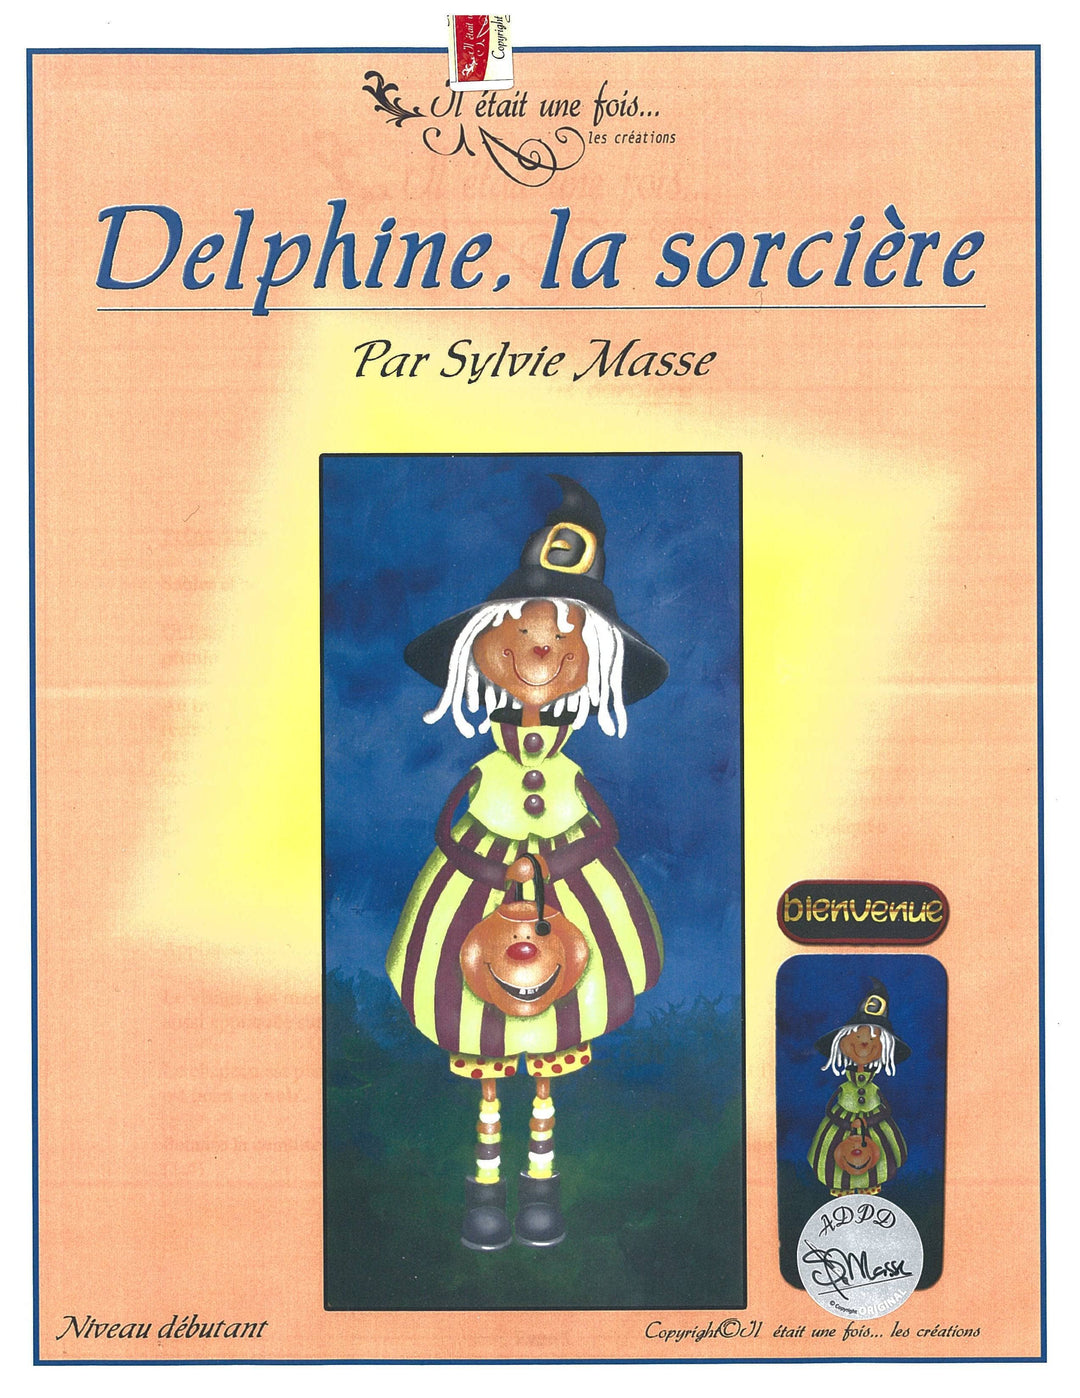 Delphine la sorcière/Sylvie Masse